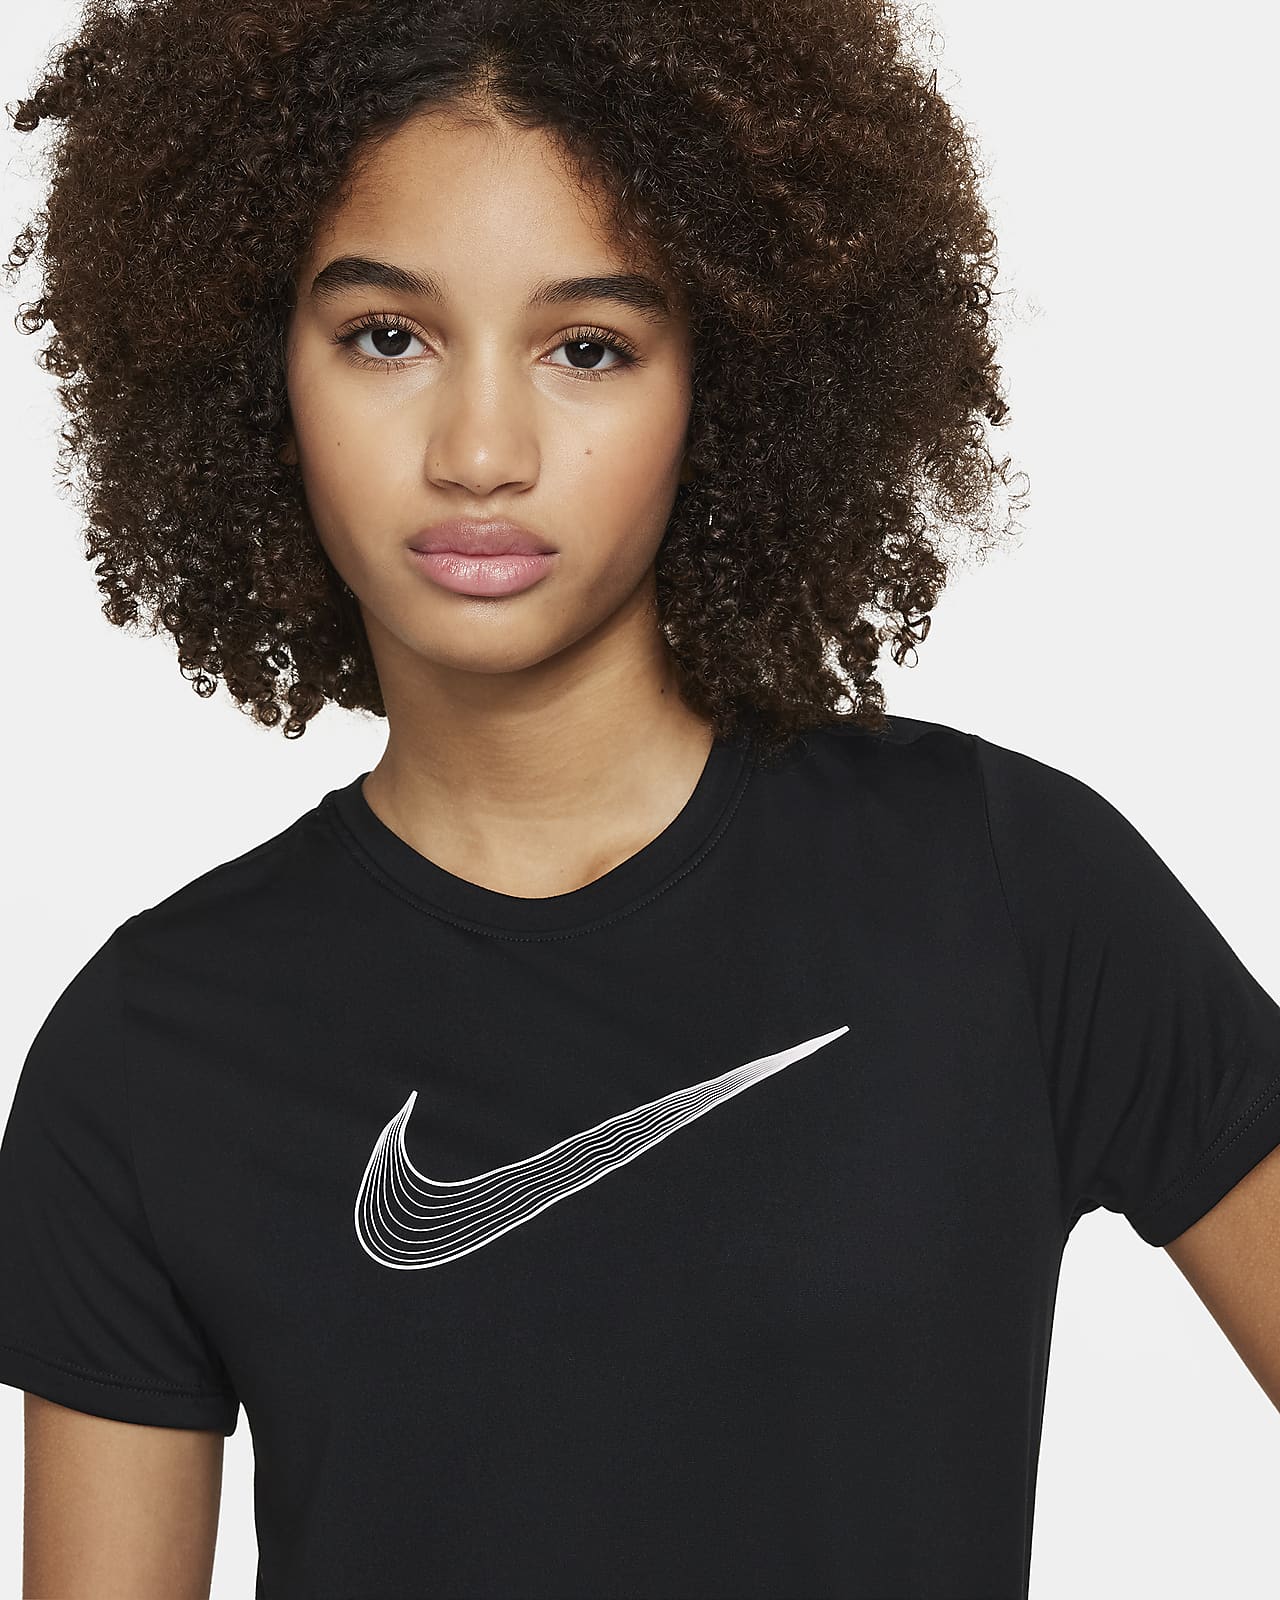 hipoteca Sedante patrocinador Nike Dri-FIT One Camiseta de entrenamiento de manga corta - Niña. Nike ES